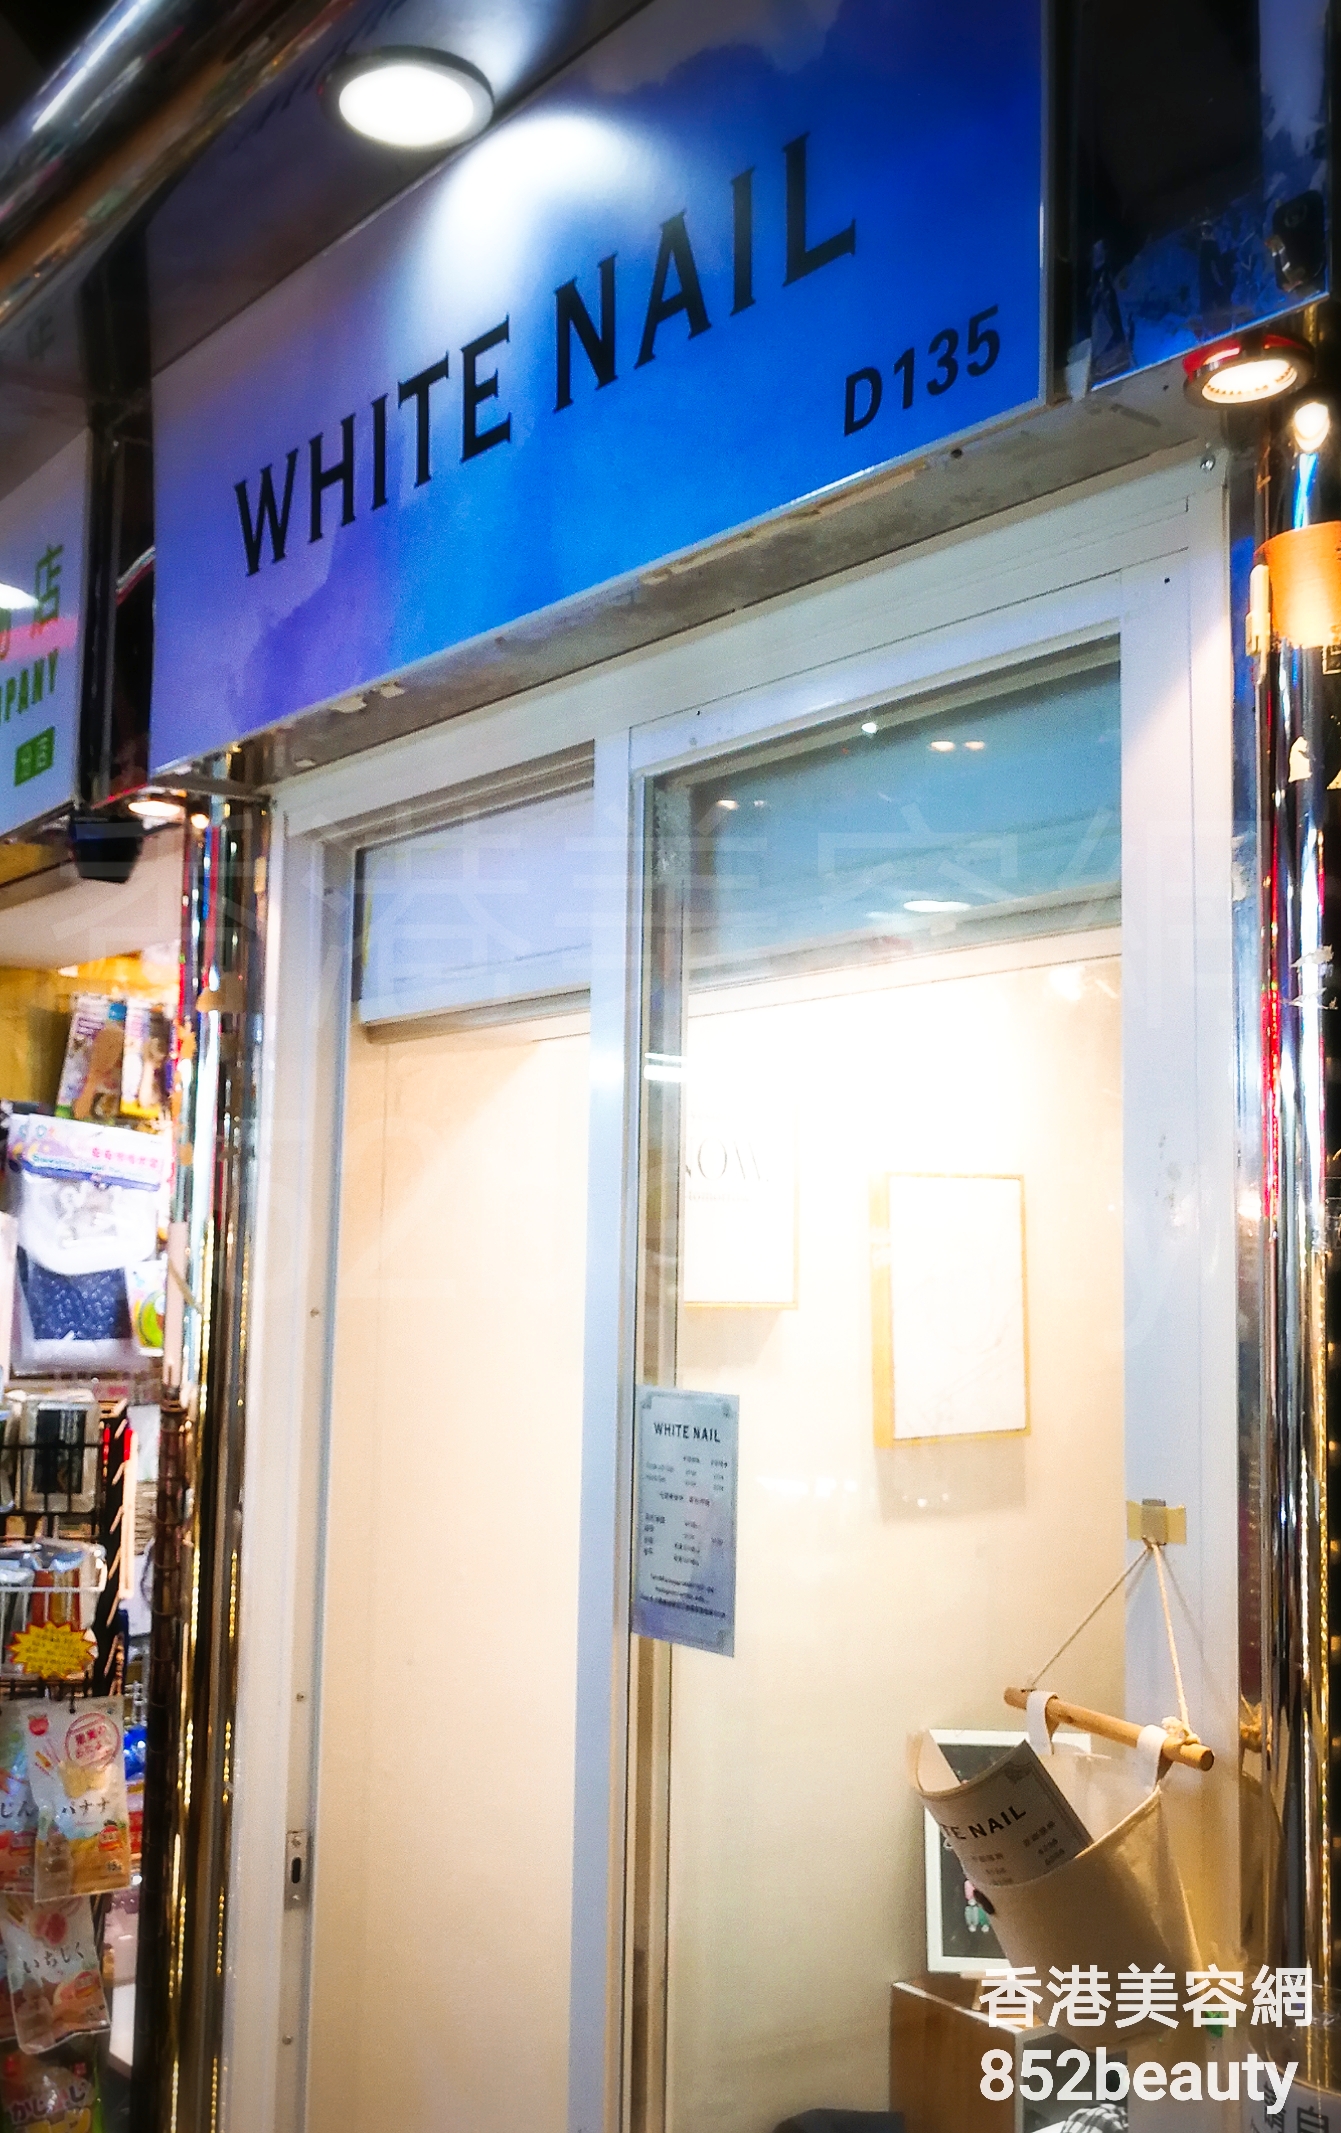 香港美容網 Hong Kong Beauty Salon 美容院 / 美容師: WHITE NAIL